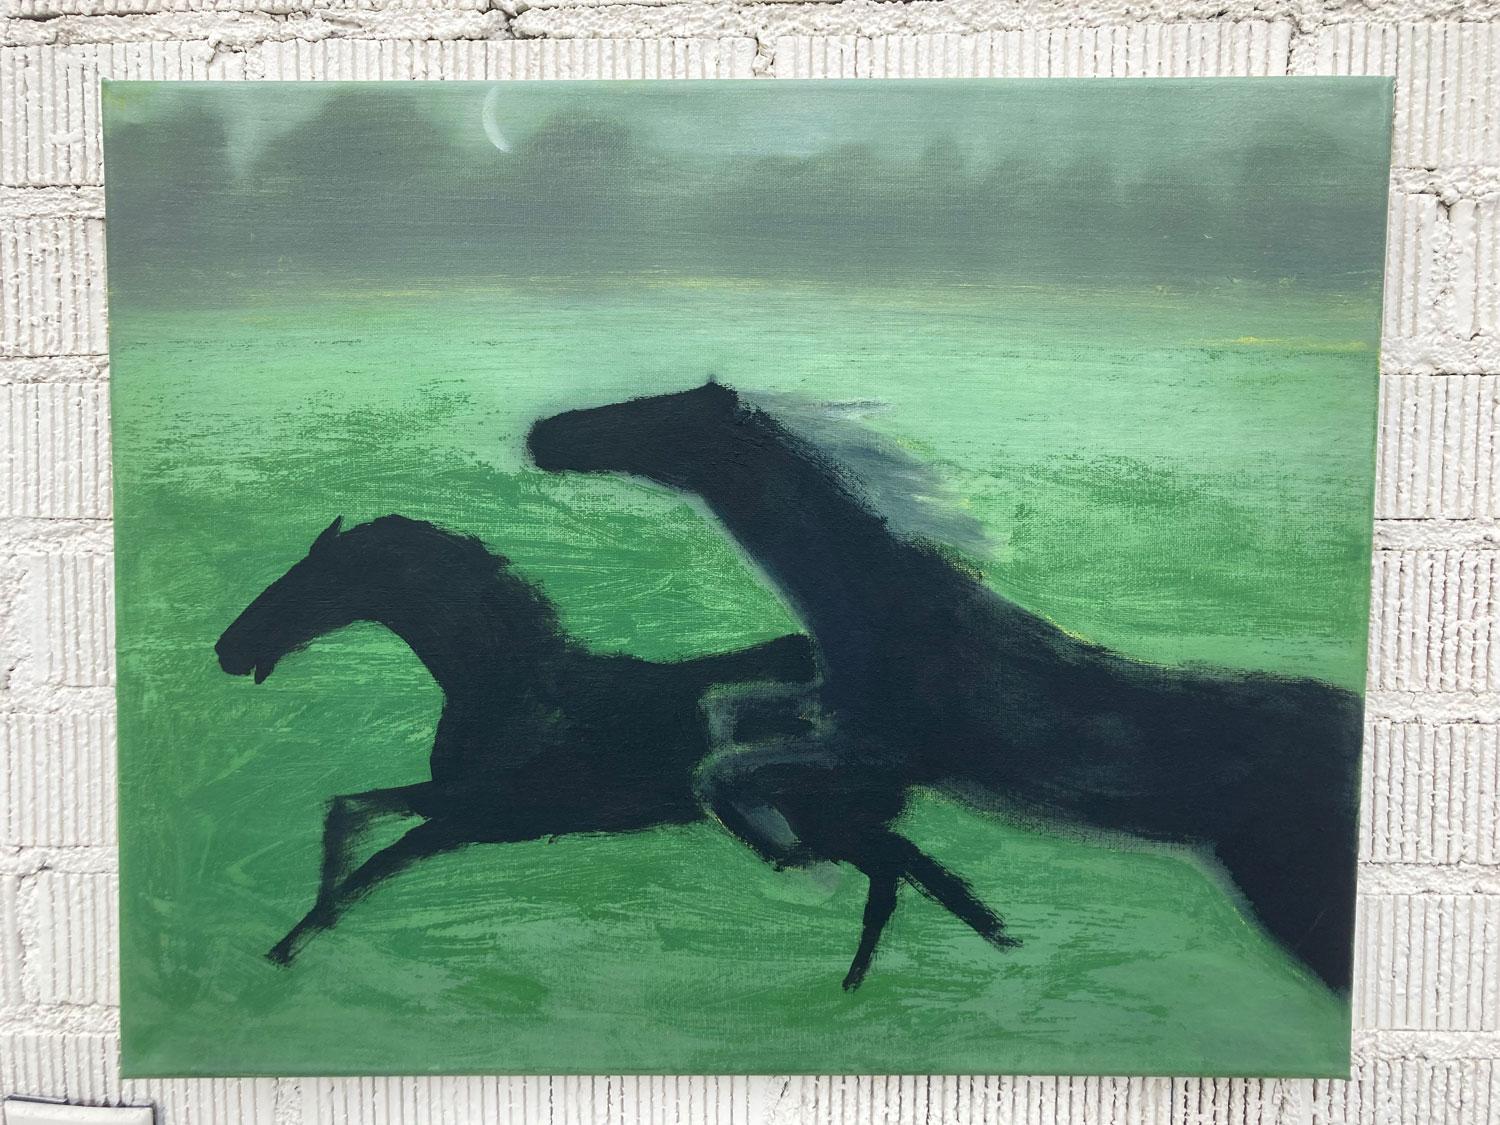 <p>Kommentare des Künstlers<br>Der Künstler Nick Bontorno zeigt ein Bild von zwei schwarzen Pferden, die durch eine grüne Wiese laufen. Der abnehmende Mond verschwindet in der Nacht und wirft ein subtiles, durchscheinendes Licht auf die neblige